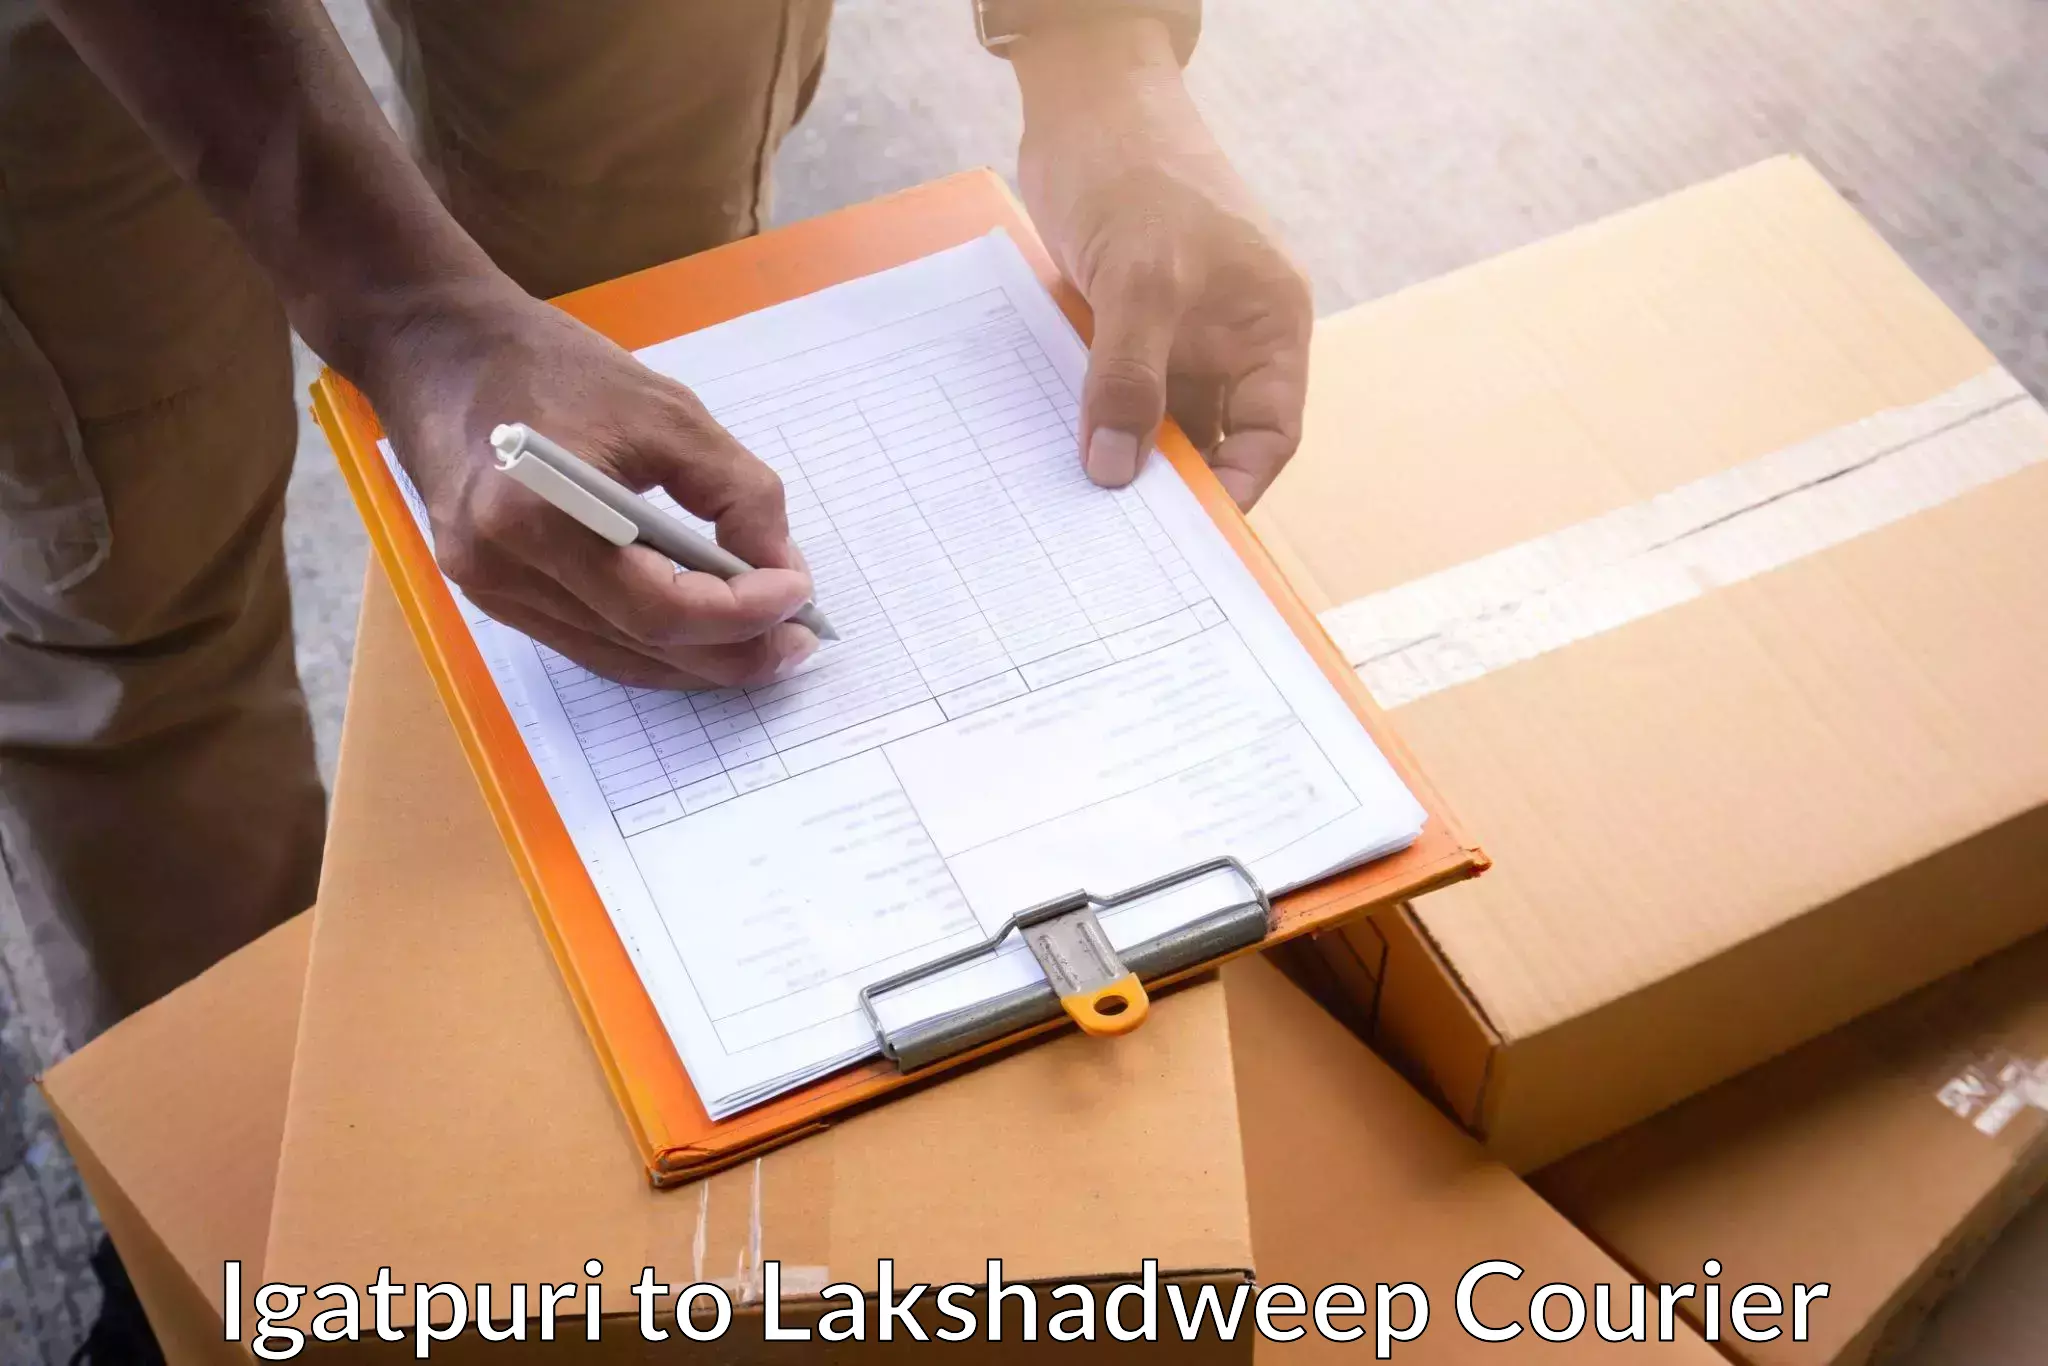 Quality courier partnerships Igatpuri to Lakshadweep